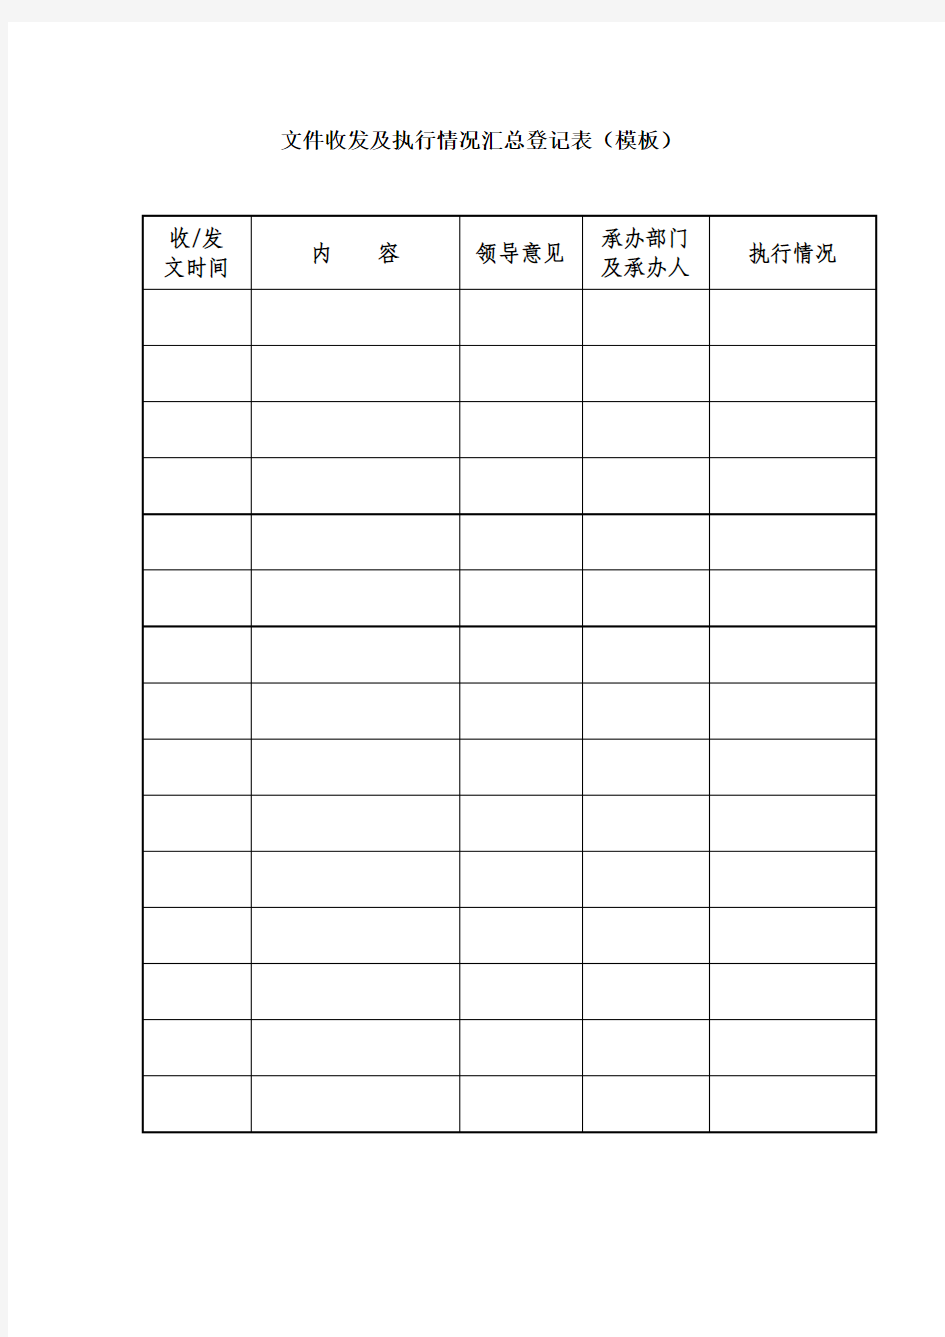 文件收发及执行情况汇总登记表(模板)